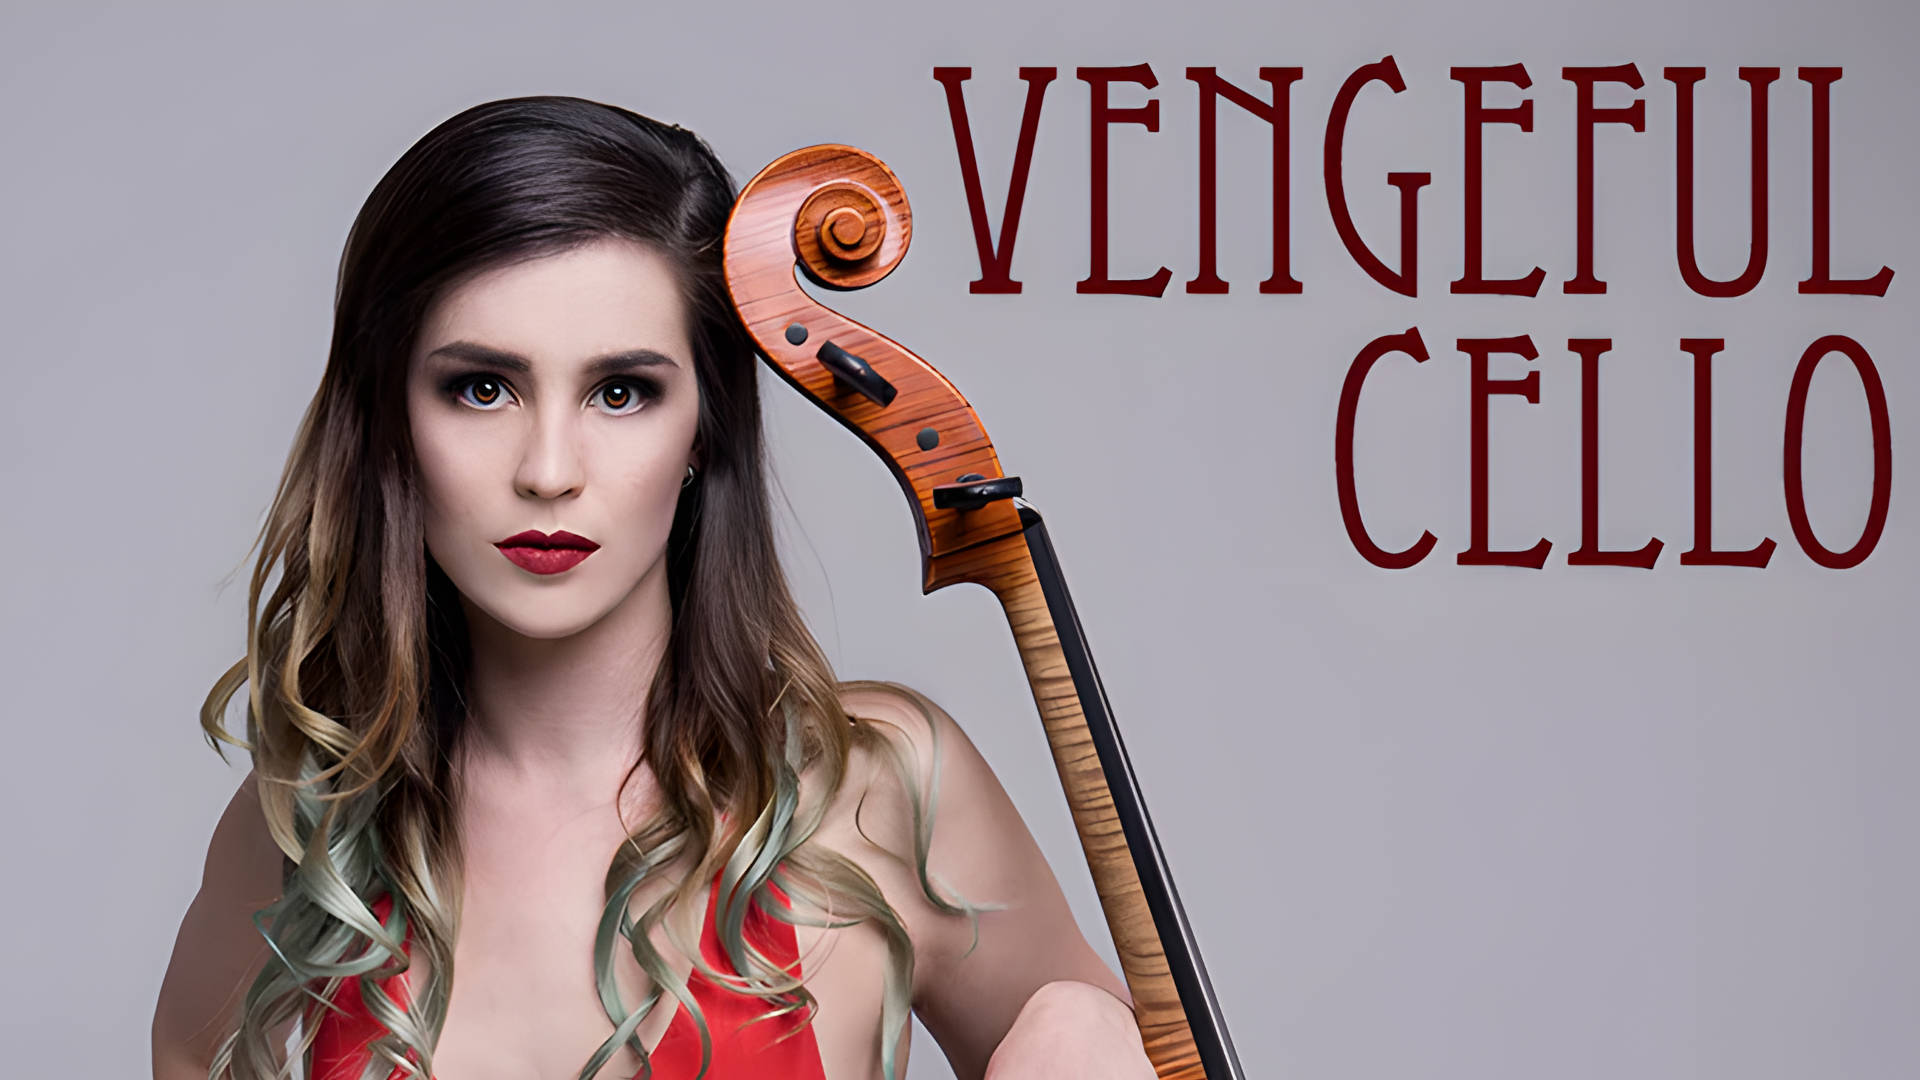 Vengeful Cello